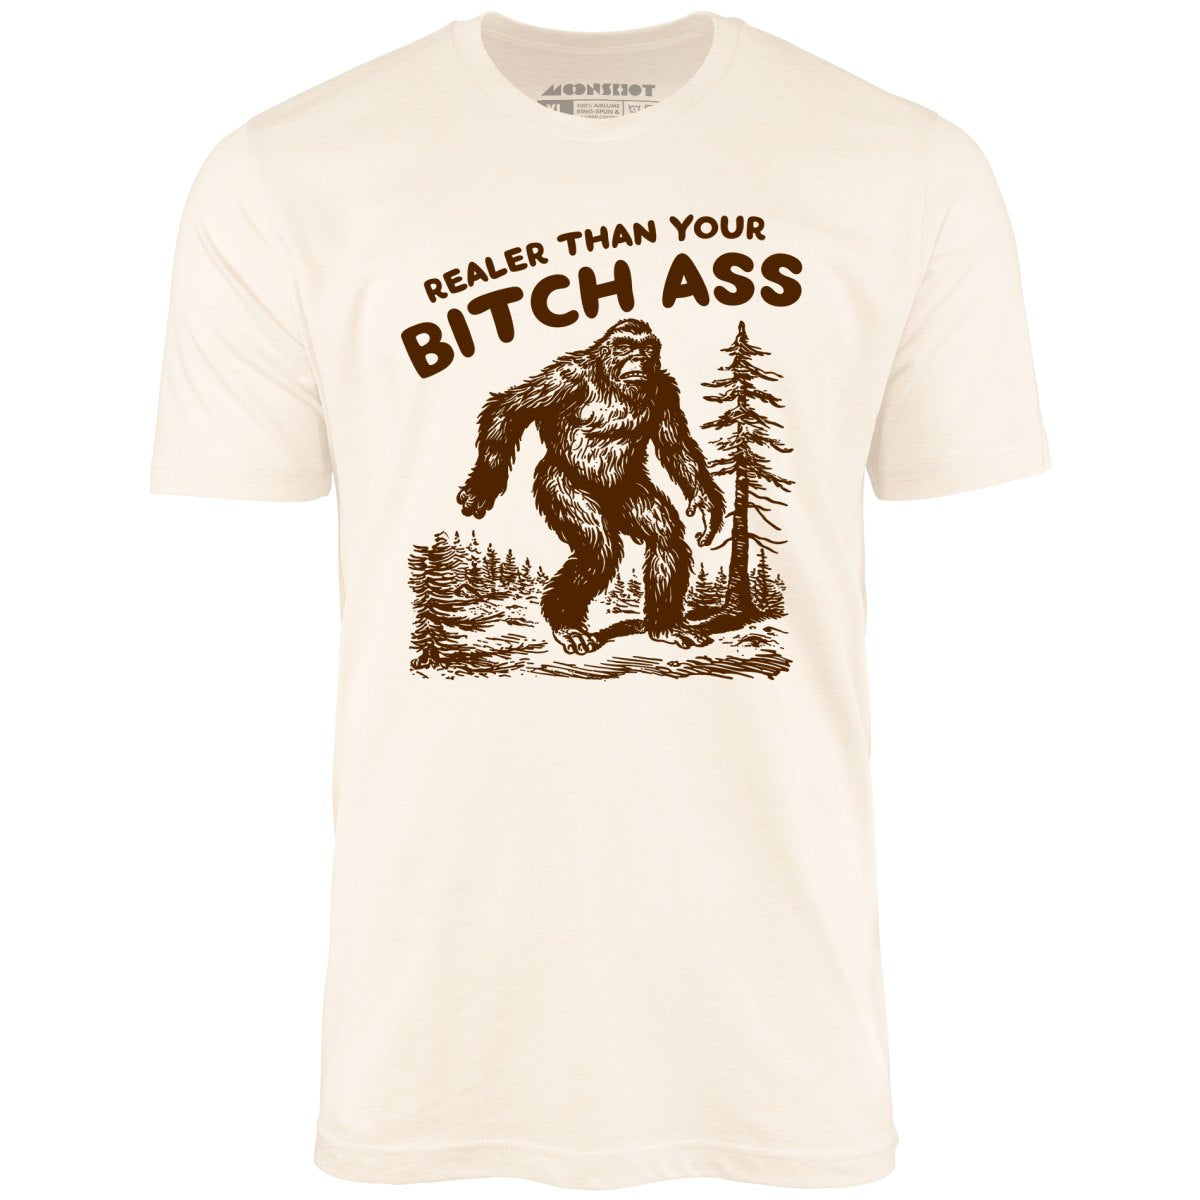 Realer Than Your Bitch Ass - Unisex T-Shirt